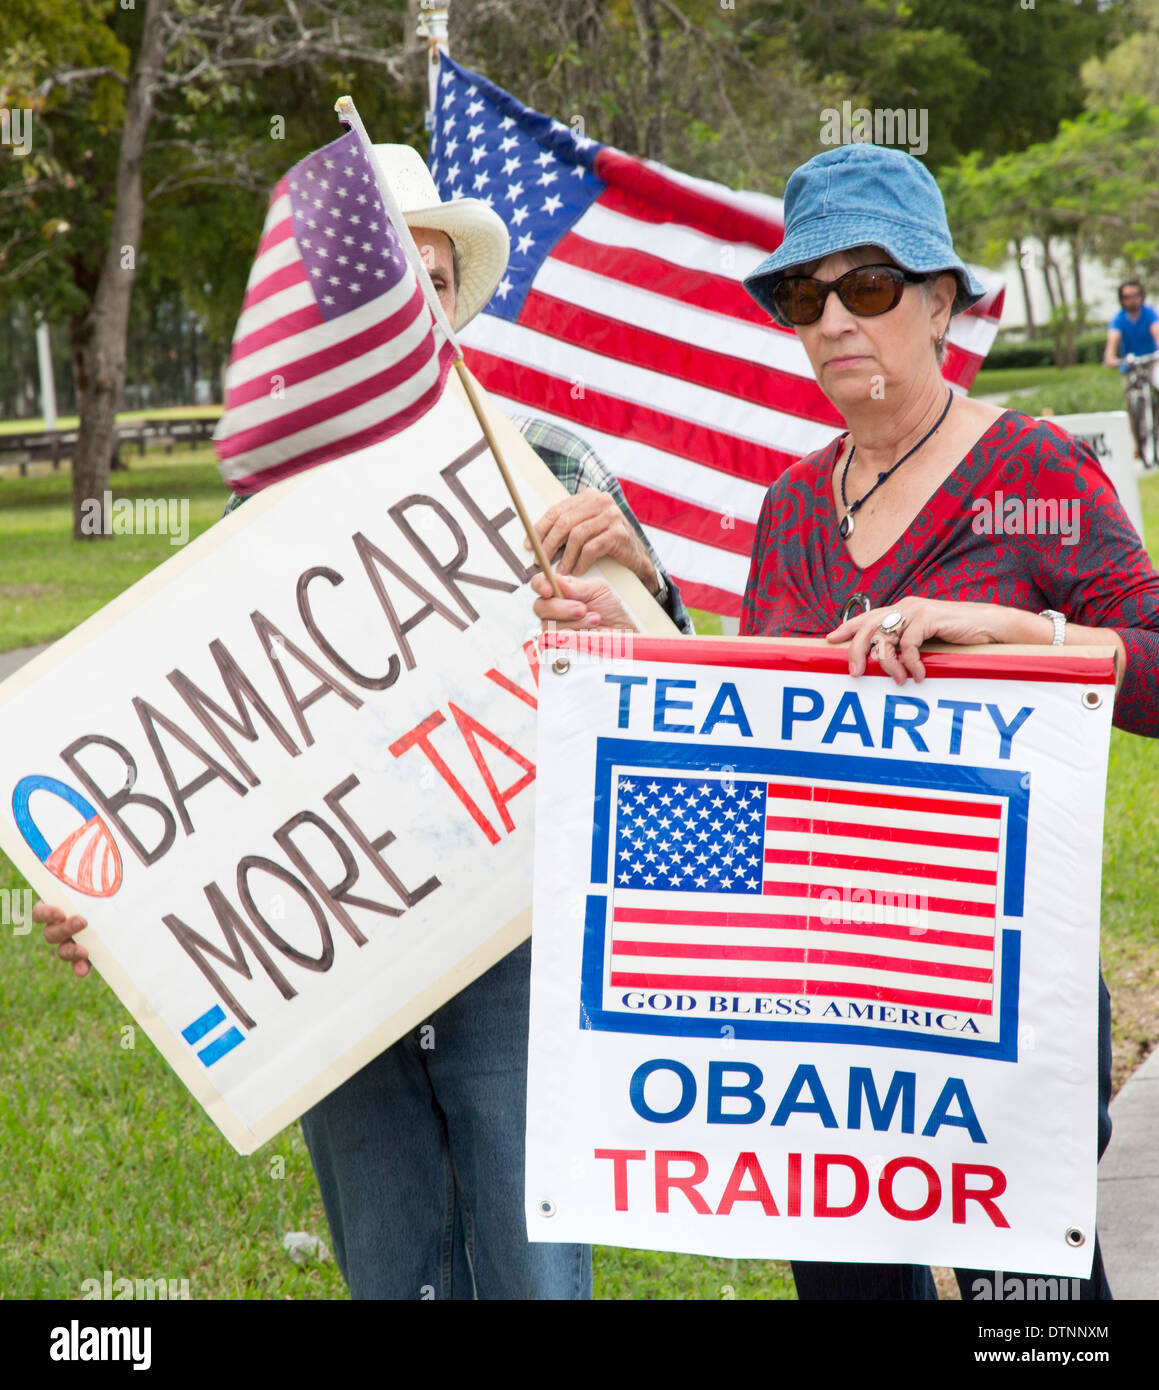 Les Cubains exilés, les membres de The Tea Party, rallye sur diverses questions, y compris à l'opposition et le président Obama. Obamacare Banque D'Images